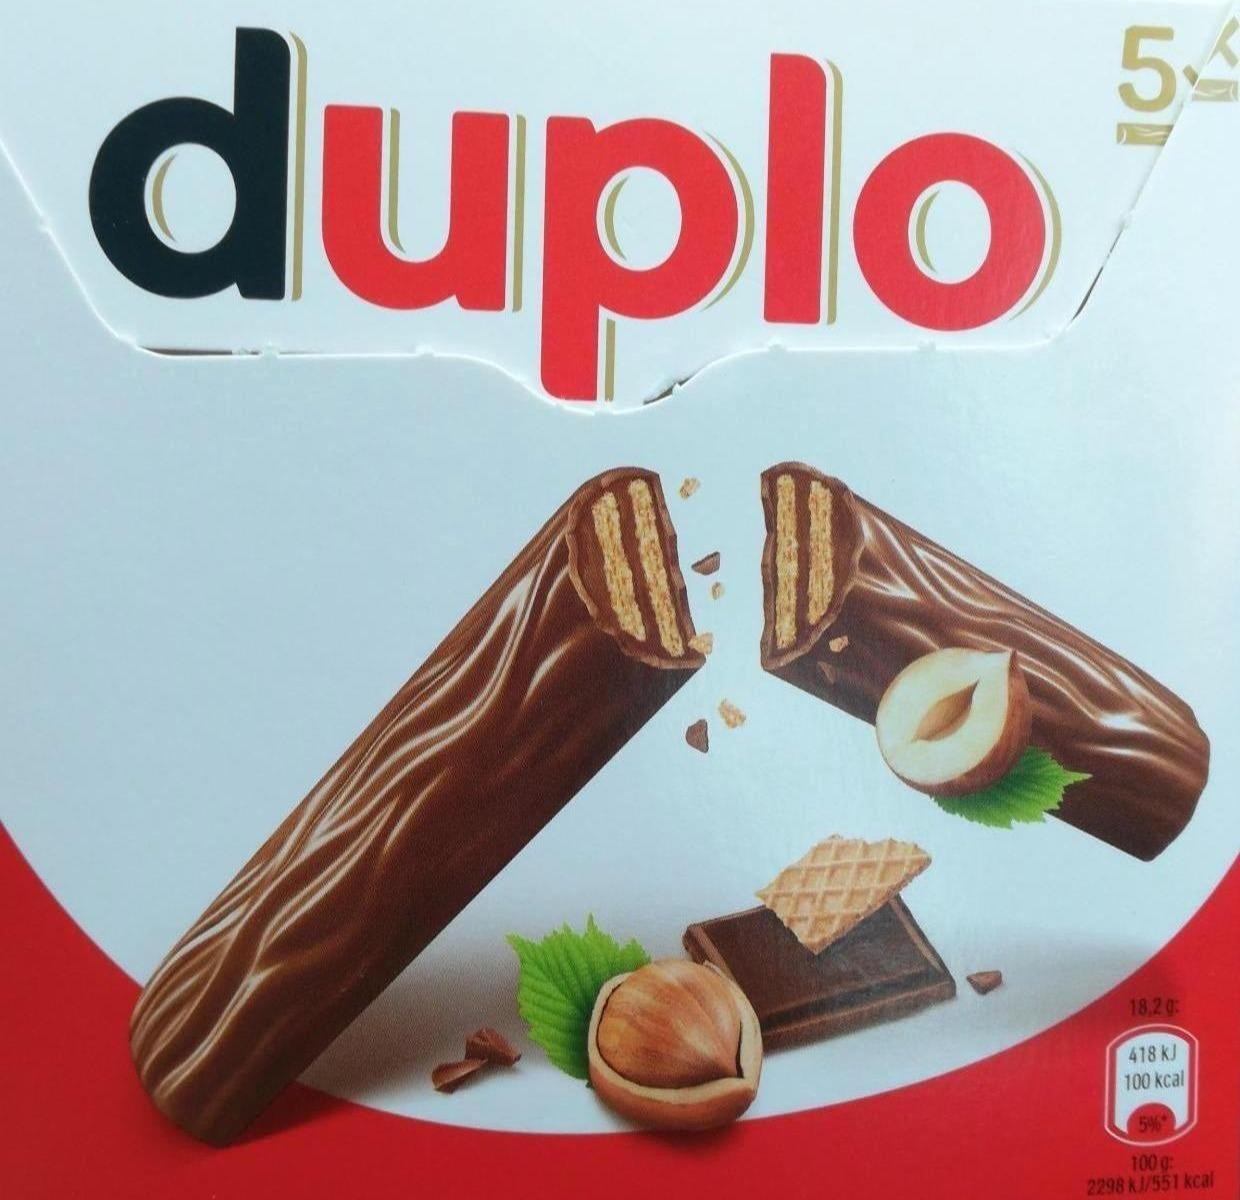 Zdjęcia - Duplo Wafel z orzechowym nadzieniem pokryty mleczną czekoladą 91 g (5 sztuk)